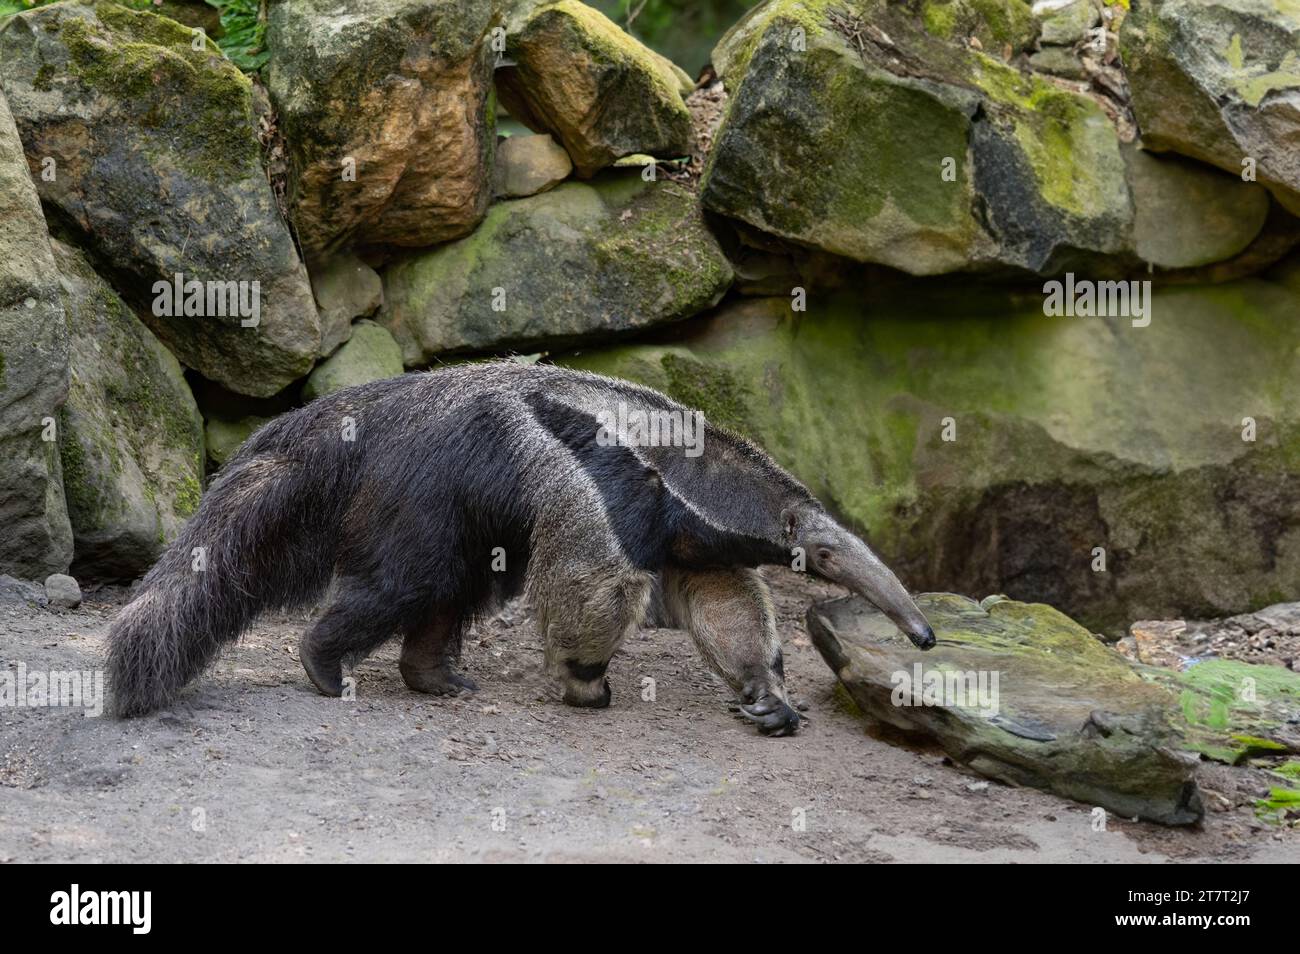 anteater, Myrmecophaga tridactyla background of stones Stock Photo